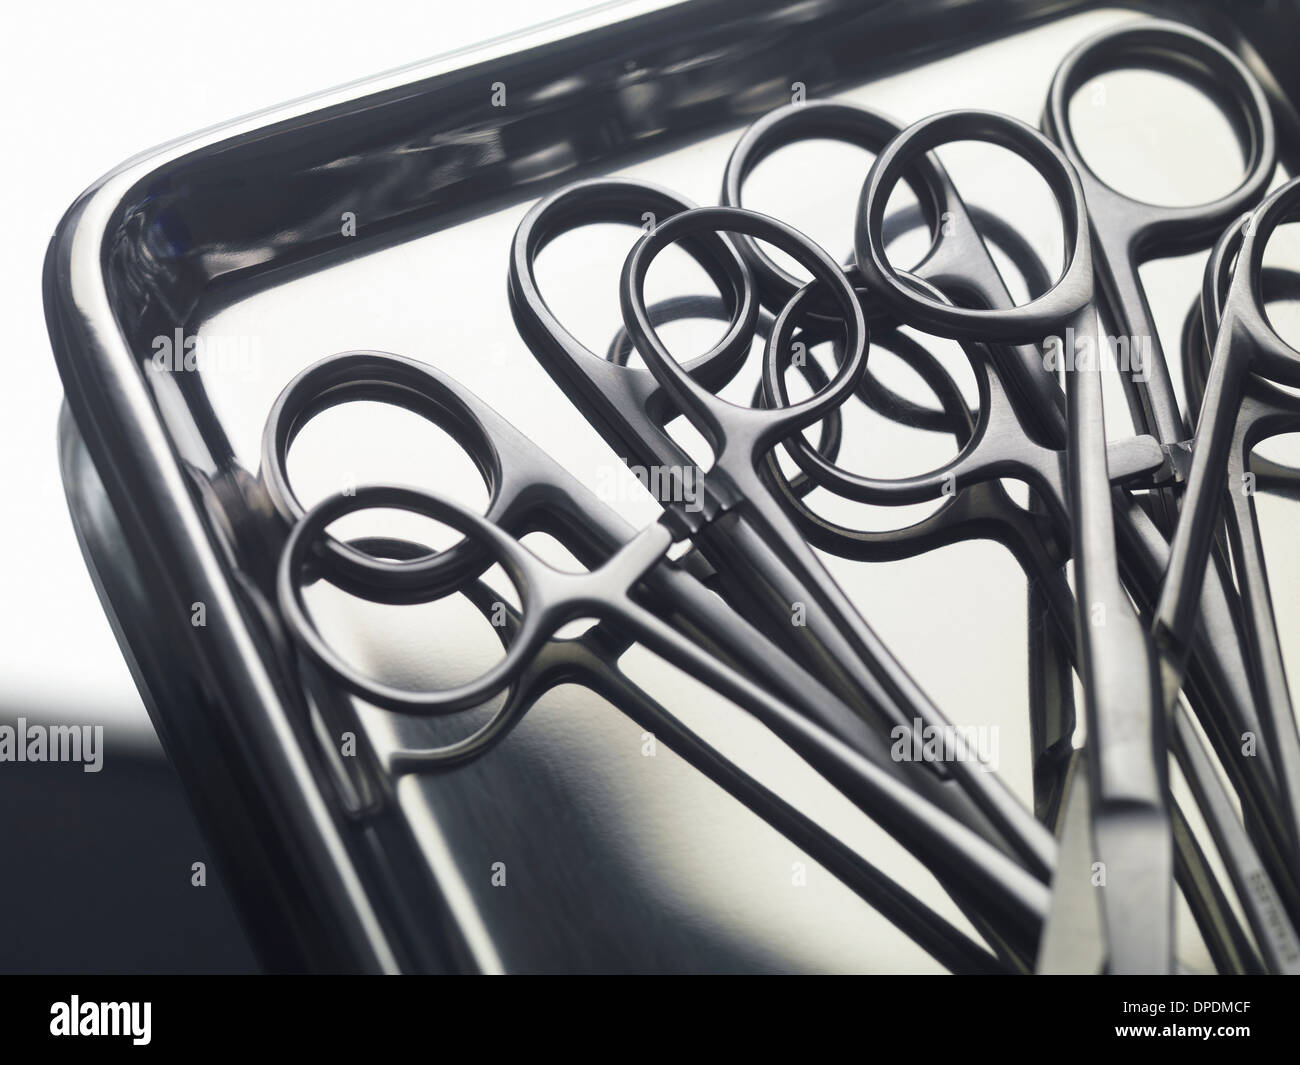 Chirurgische Instrumente auf einem Edelstahl-Tablett Stockfoto